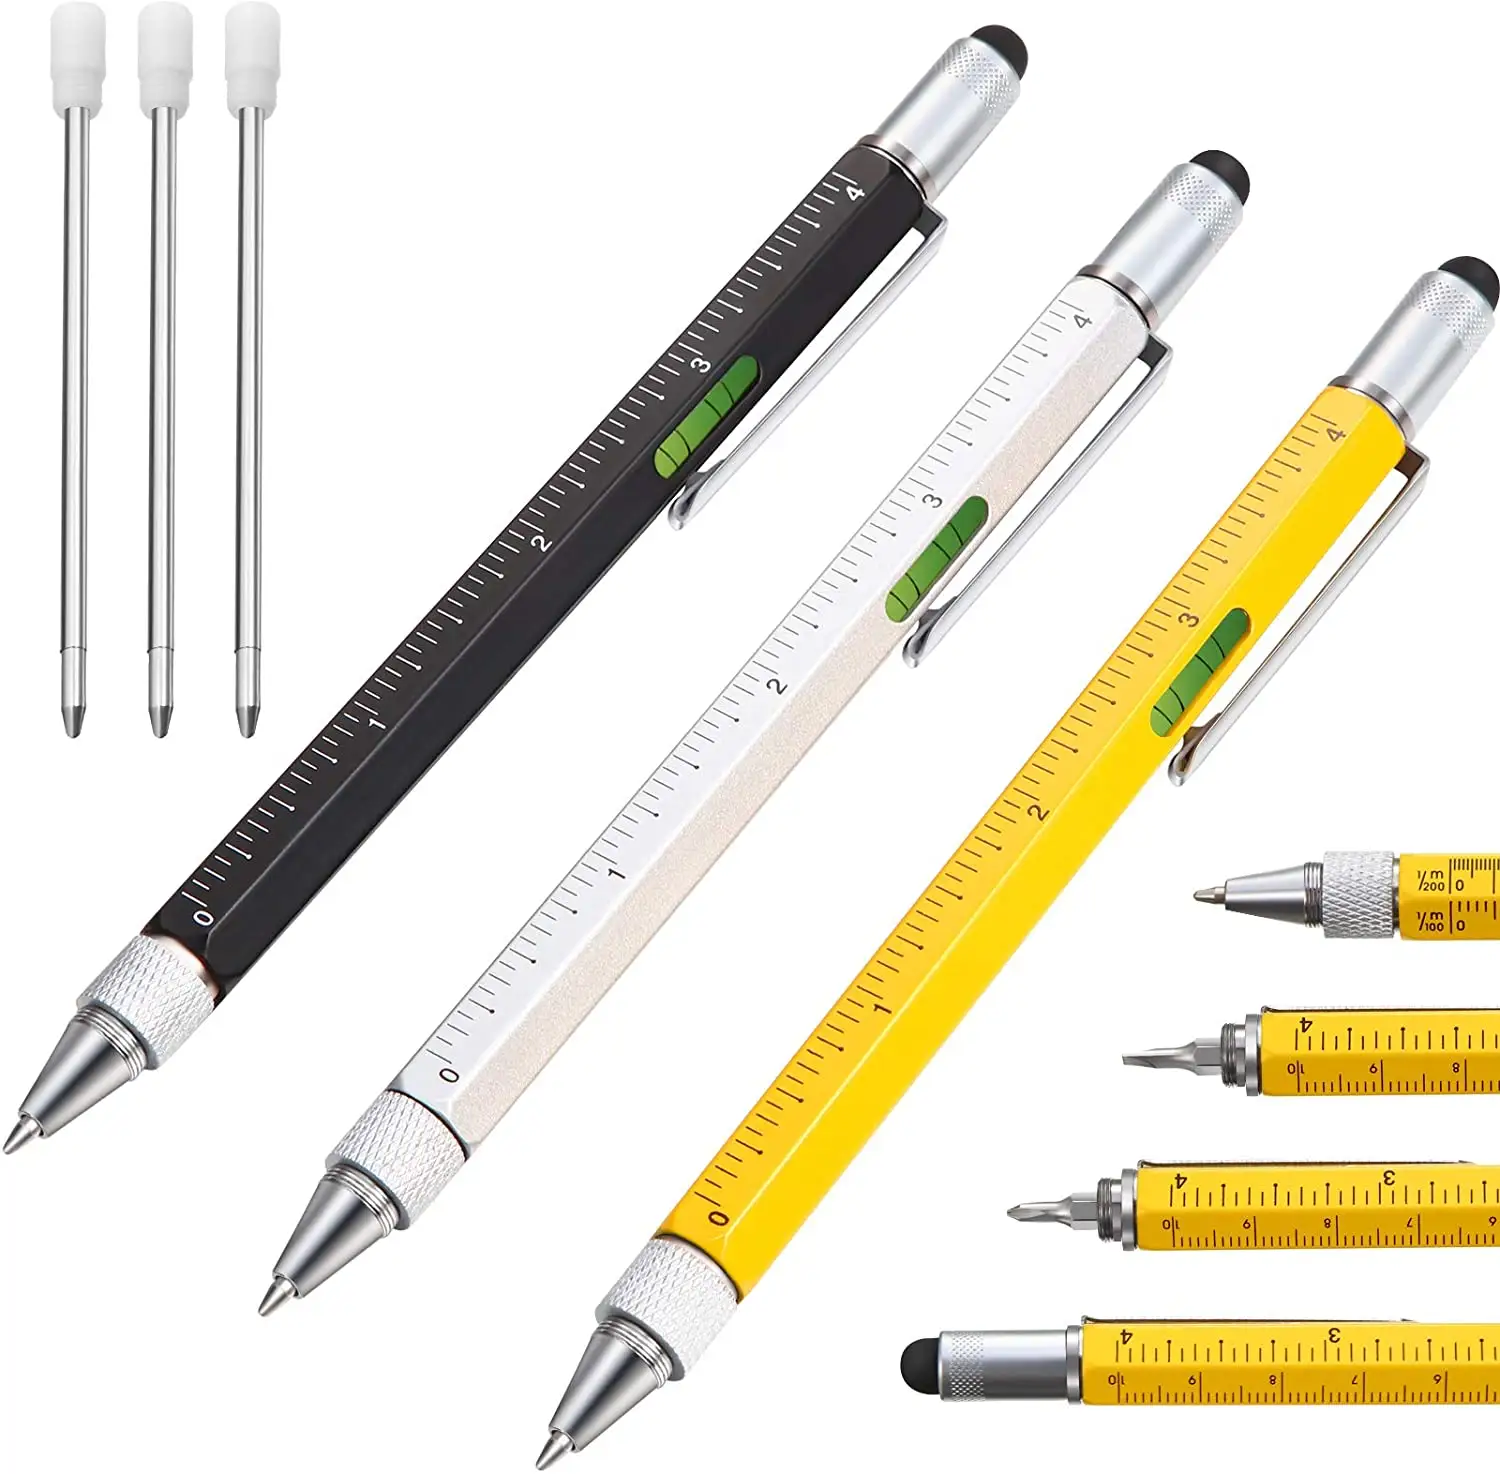 Promosyon plastik/Metal çok fonksiyonlu kalem 6 in 1 aracı kalem hediye için